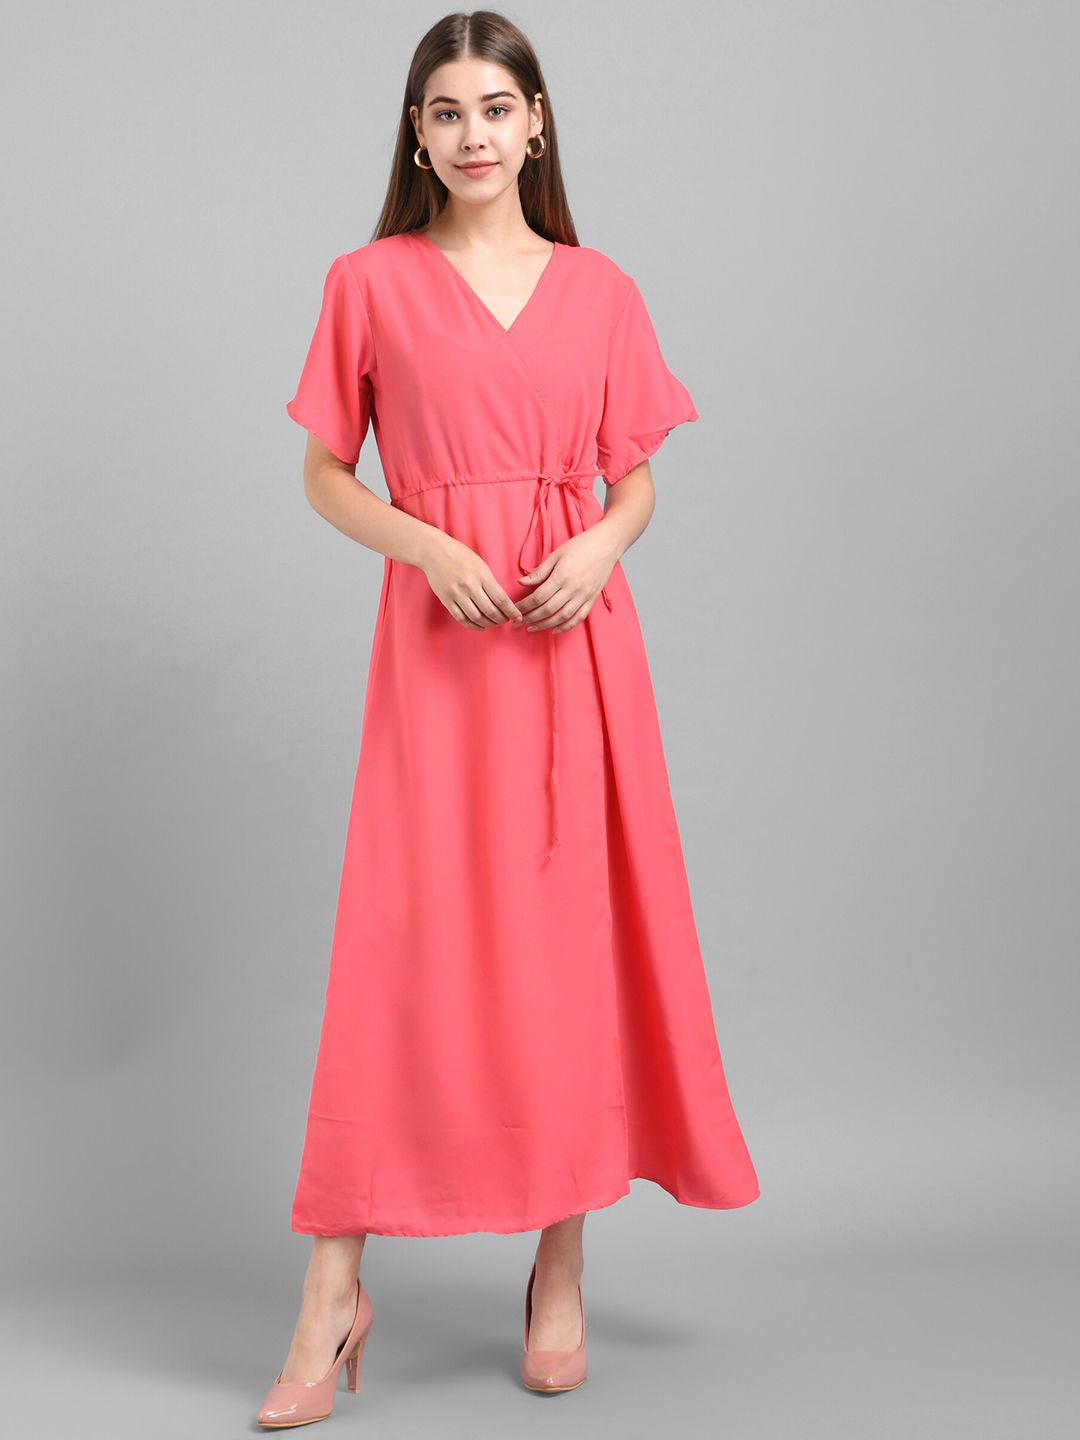 BAESD V-Neck Slit Sleeve Maxi Dress Price in India